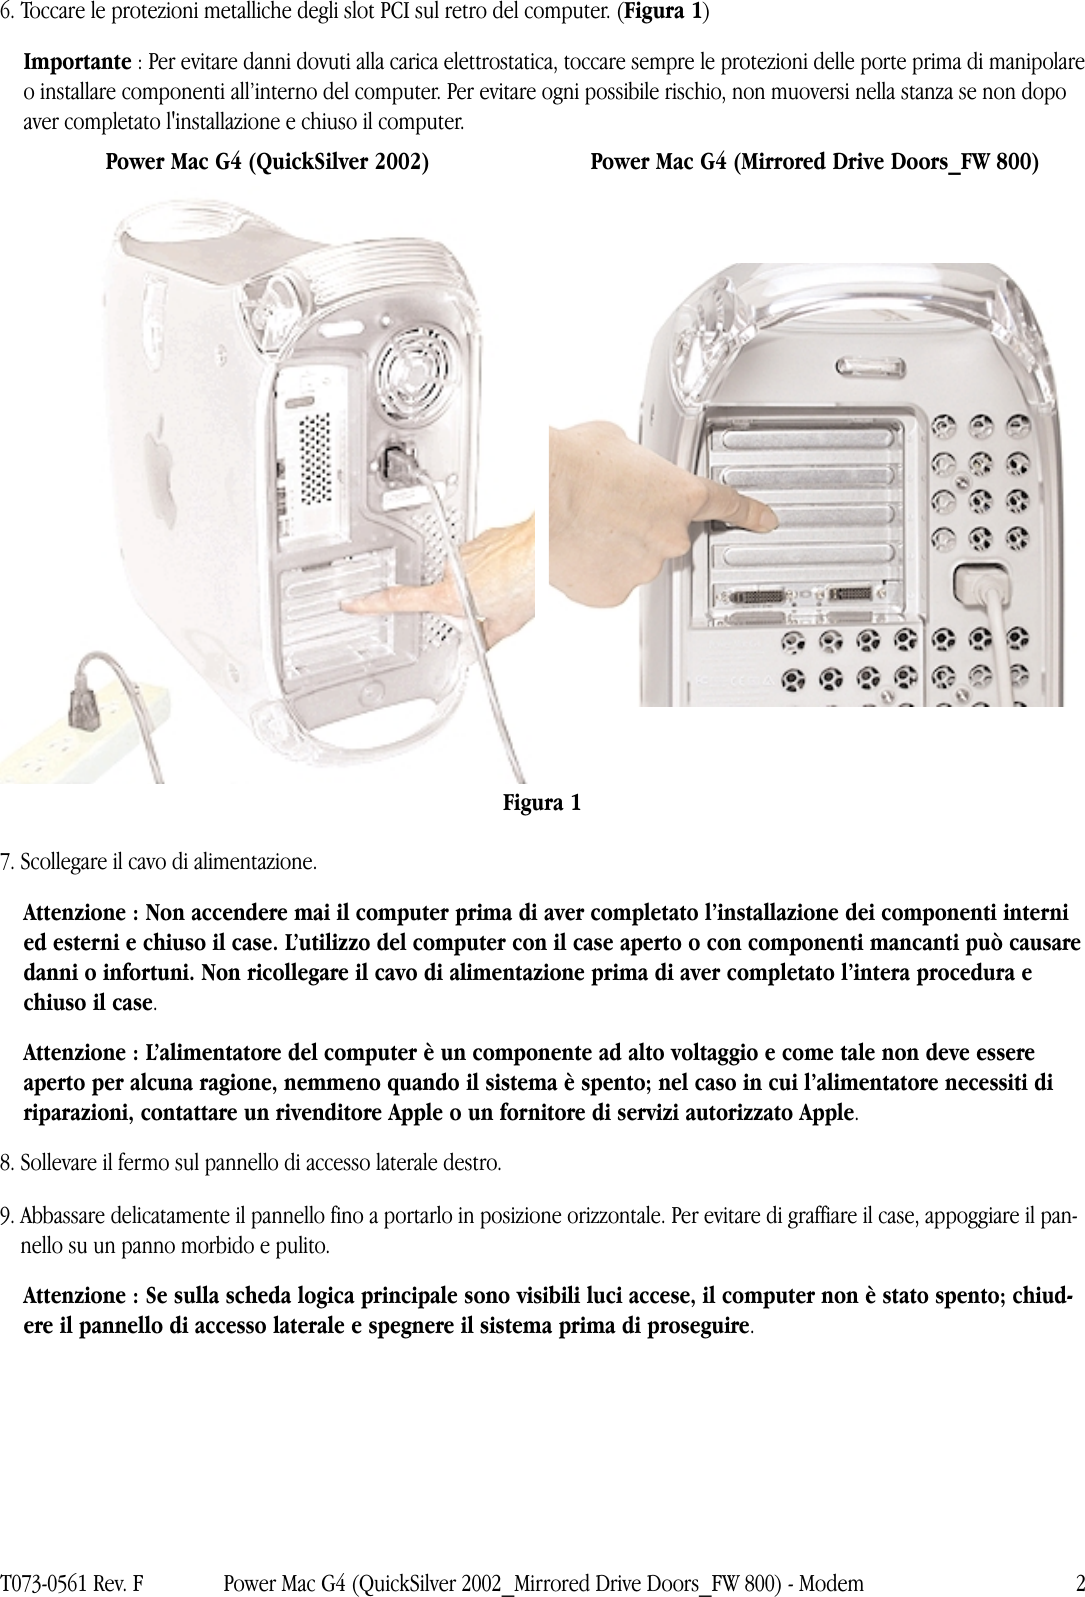 Page 2 of 4 - Apple Power Mac G4 (QuickSilver 2002) Modem User Manual (Quick Silver 2002, Porta Unità In Mirroring, Fire Wire 800) - Istruzioni Per La Sostituzione G4mdd-fw800-modem